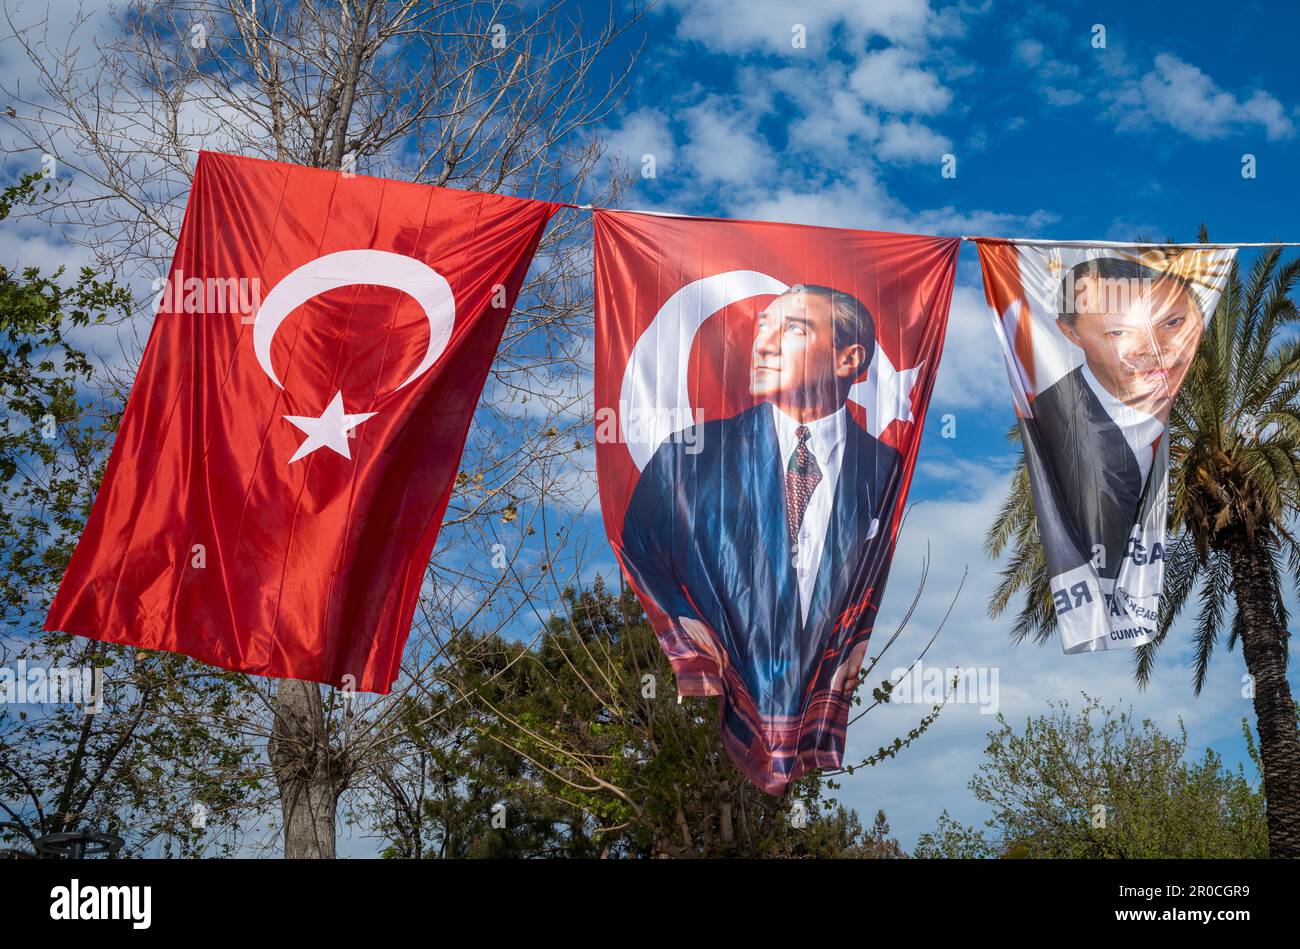 L'esposizione di bandiere e bandiere che volano in alto su una corda contro un cielo blu ad Antalya, Turchia, mostra l'identità politica e nazionale del paese. Foto Stock